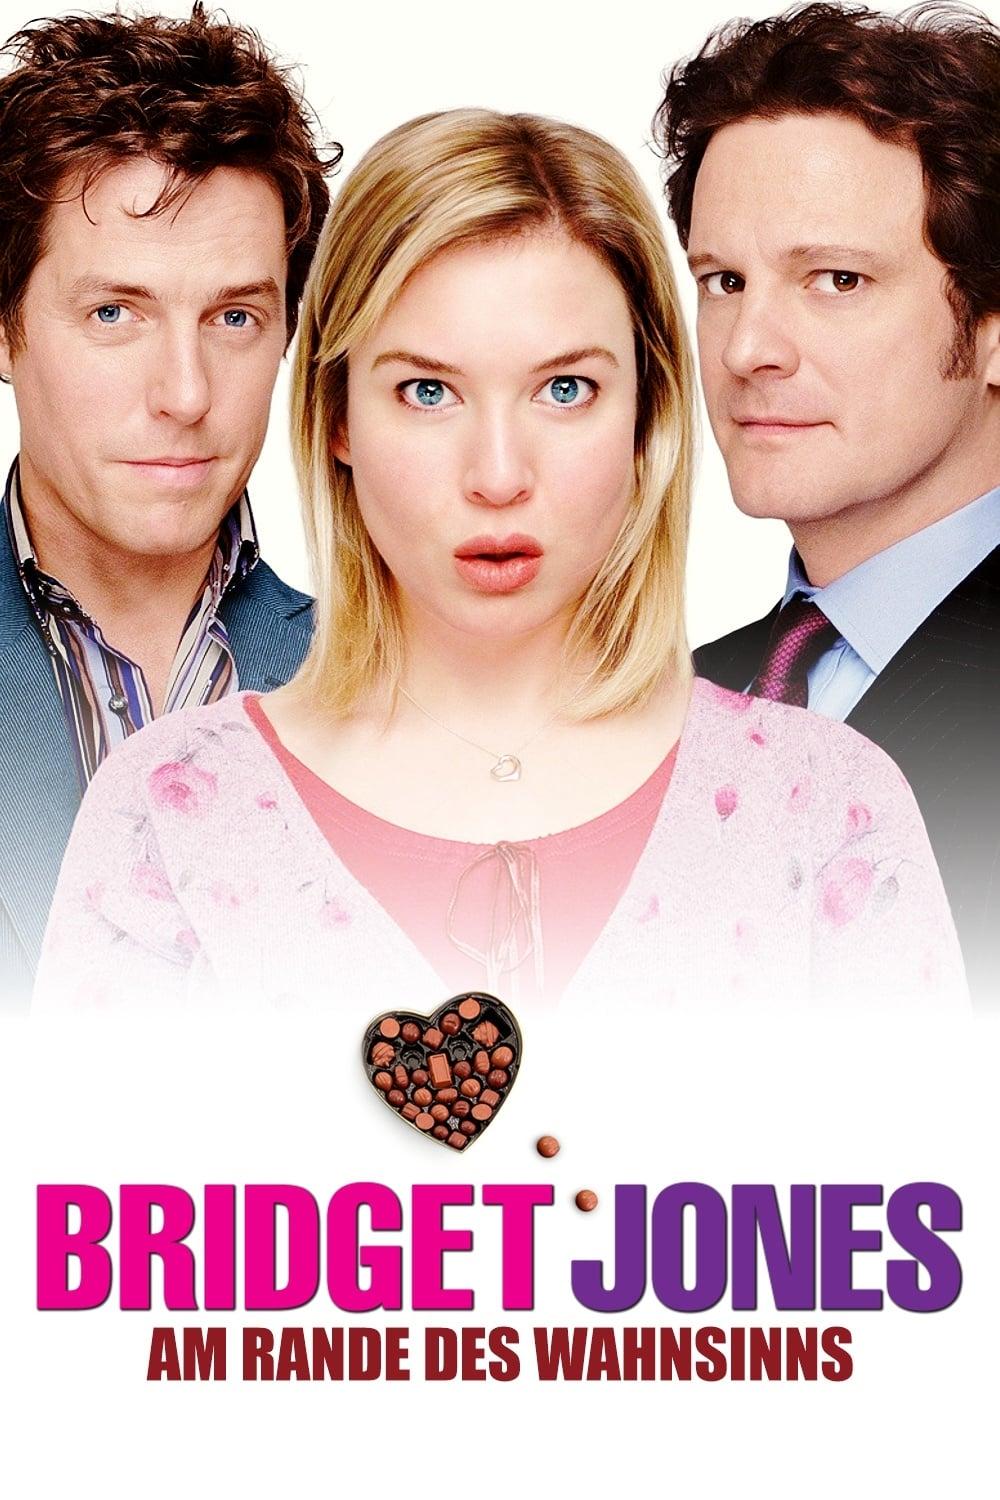 Bridget Jones - Am Rande des Wahnsinns poster